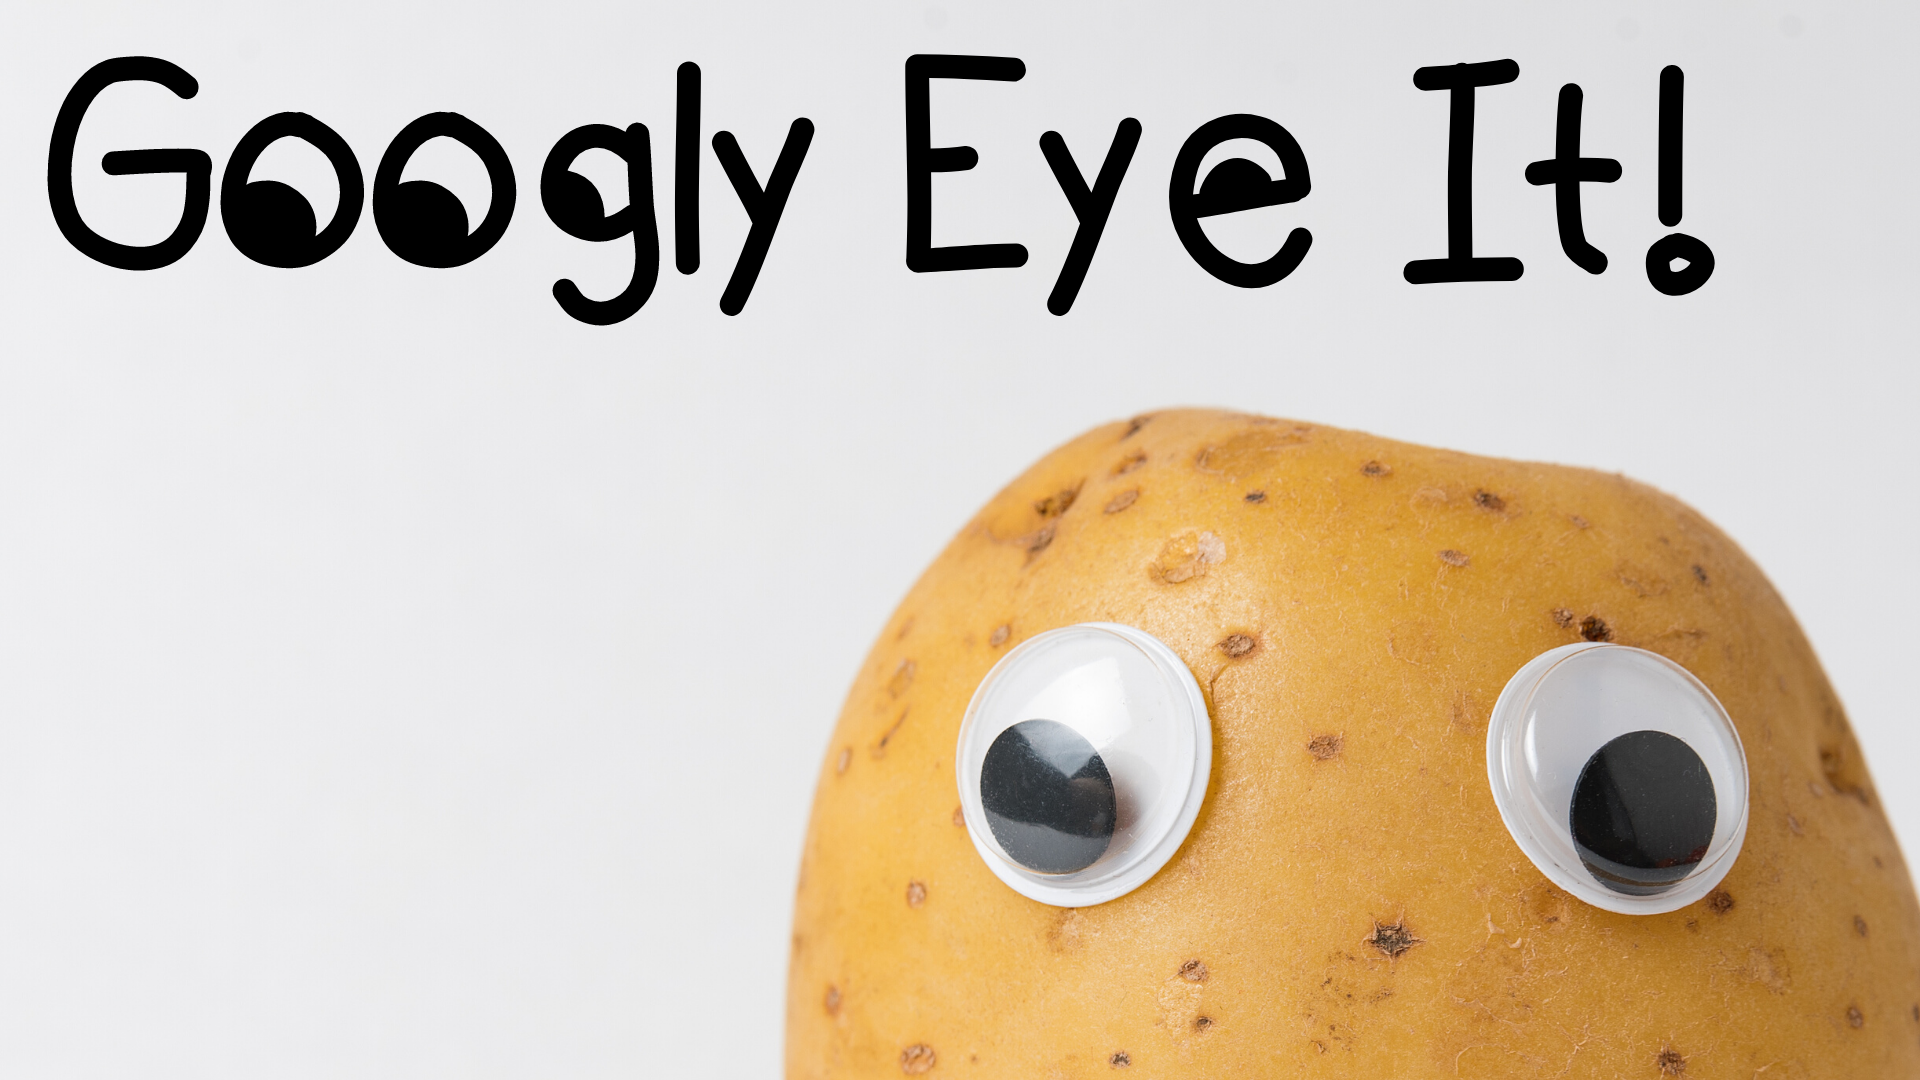 Googly Eye It!